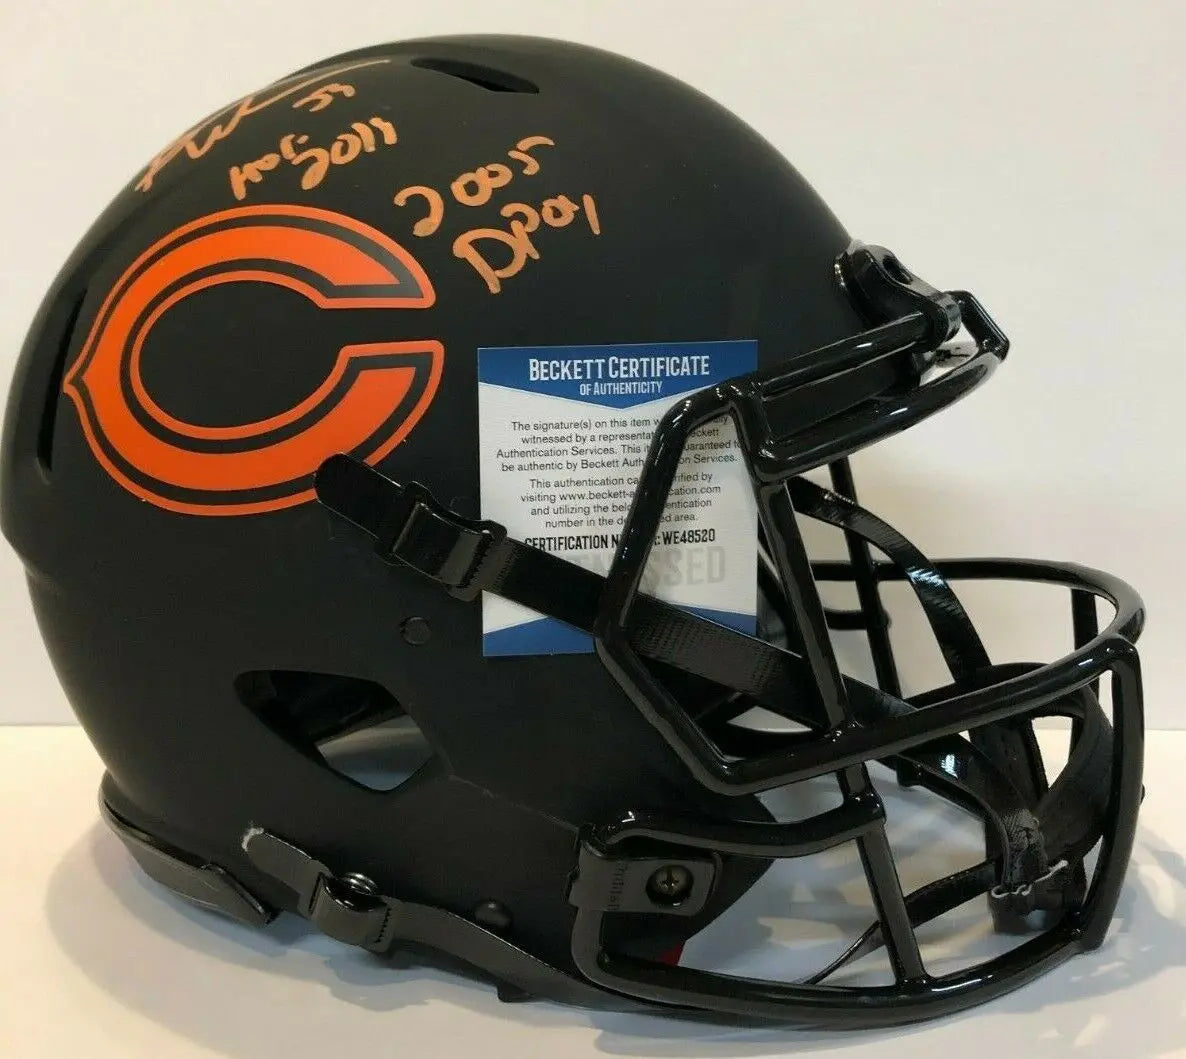 chicago bears authentic helmet